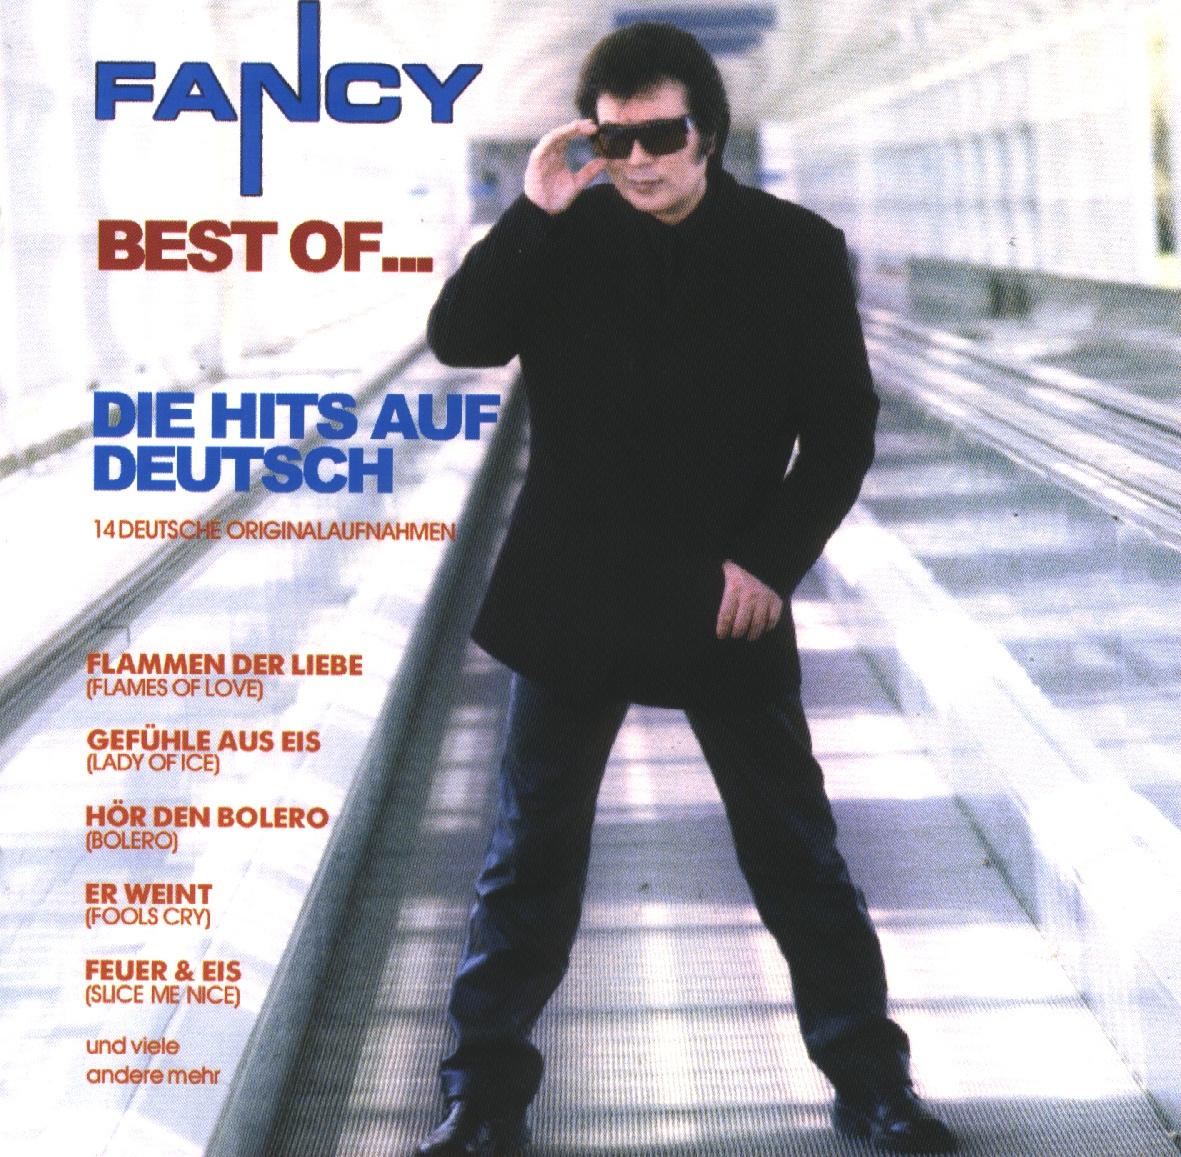  Fancy - Best Of... Die Hits Auf Deutsch (2003)